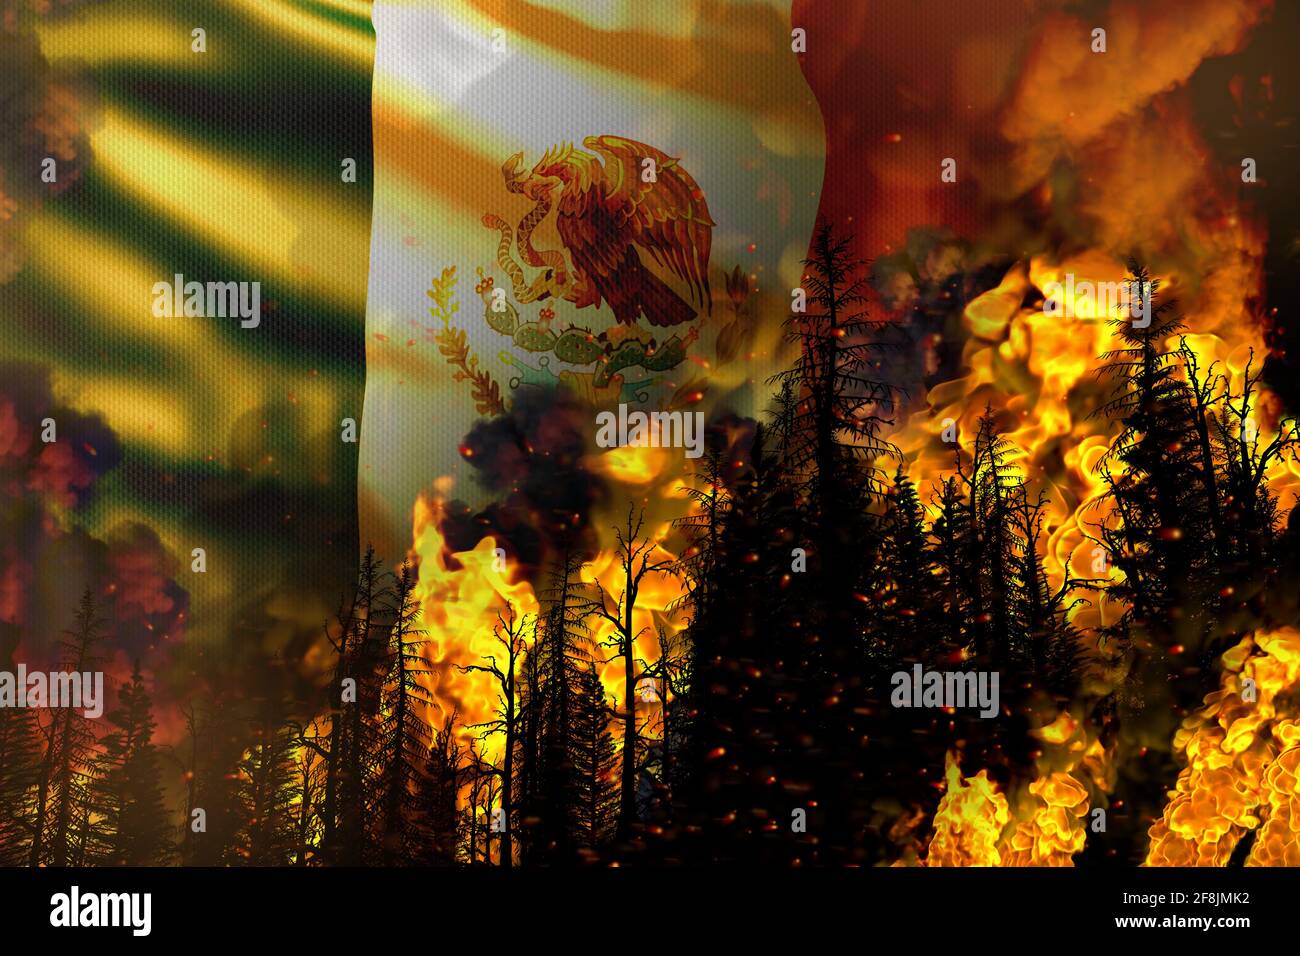 Concepto de desastres naturales de incendios forestales - fuego infernal en el Árboles en el fondo de la bandera de México - 3D ilustración de la naturaleza Foto de stock